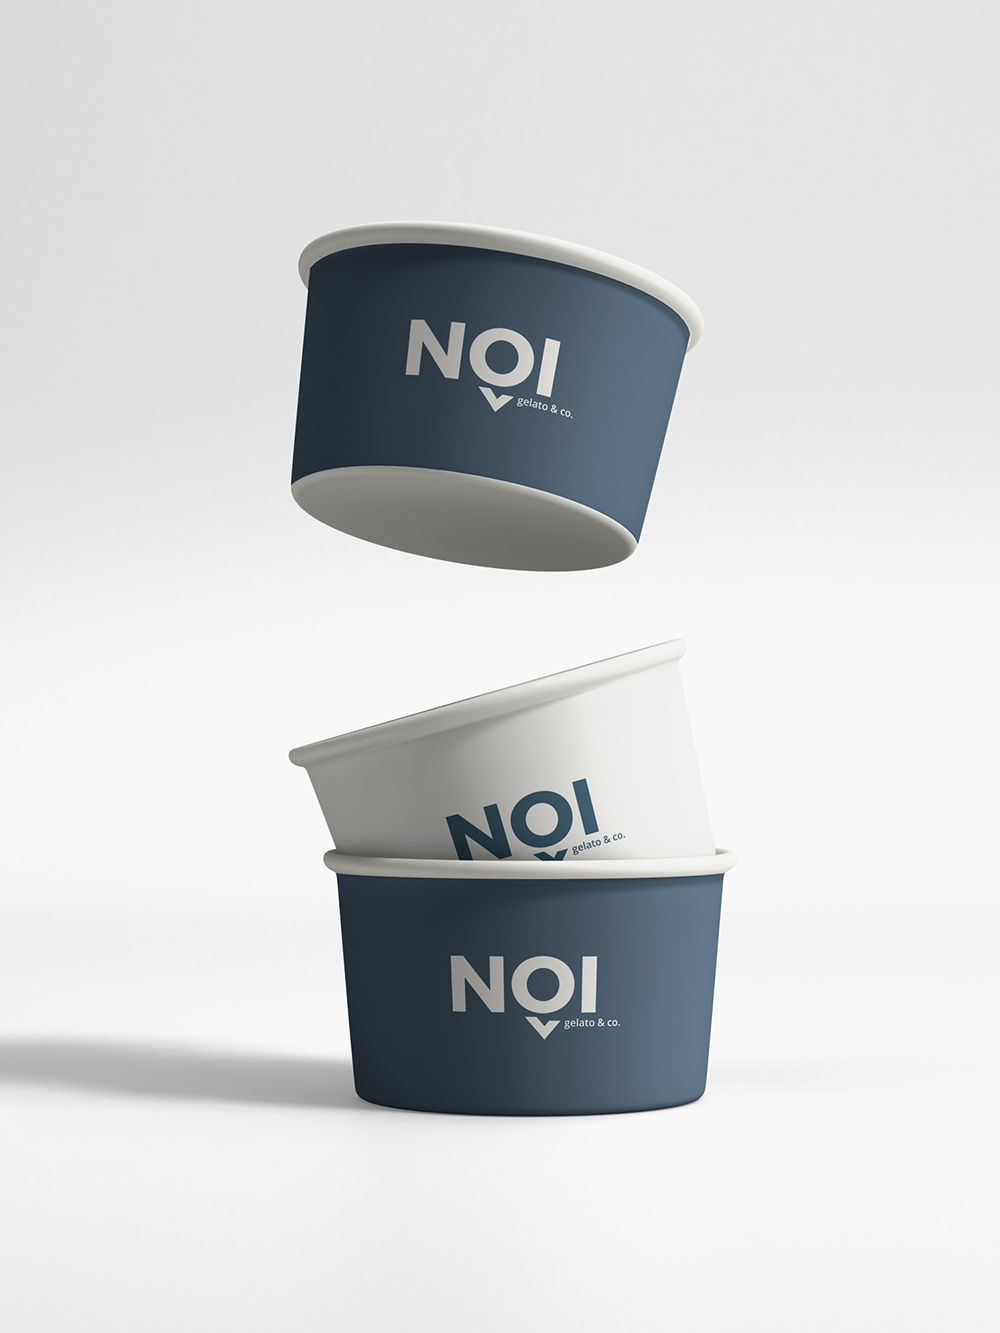 Diseño y desarrollo de identidad visual corporativa para NOI Gelato&Co. Detalle tarrinas helado.